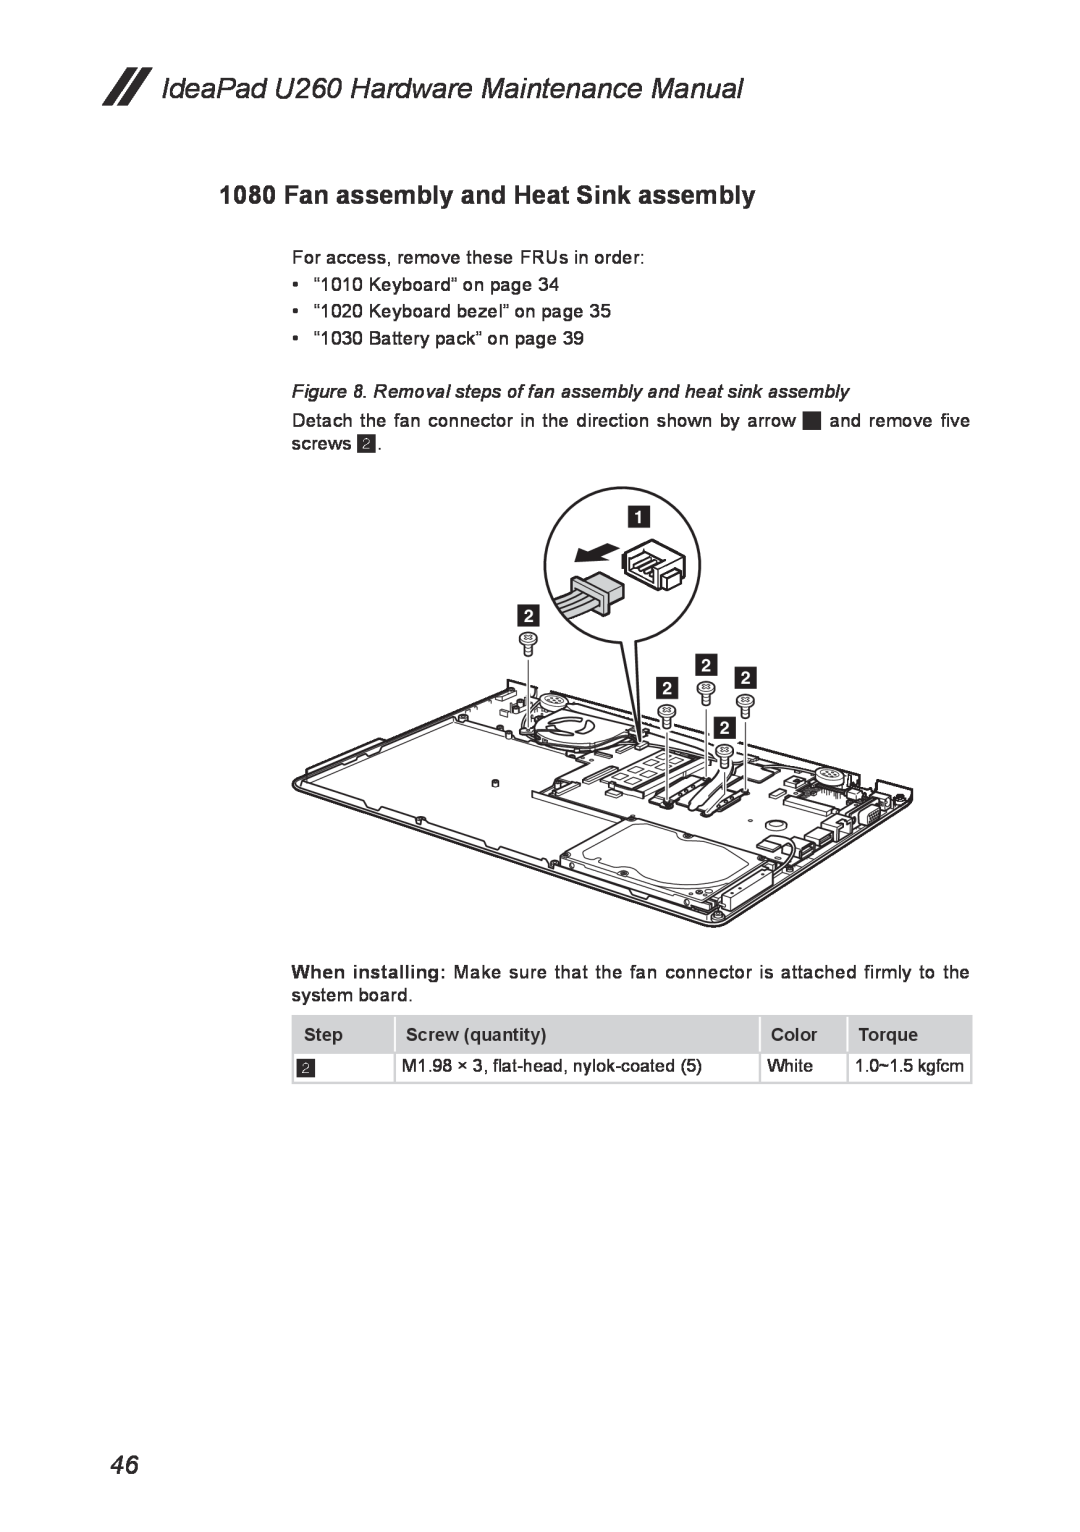 Lenovo U260 manual Fan assembly and Heat Sink assembly, Removal steps of fan assembly and heat sink assembly 